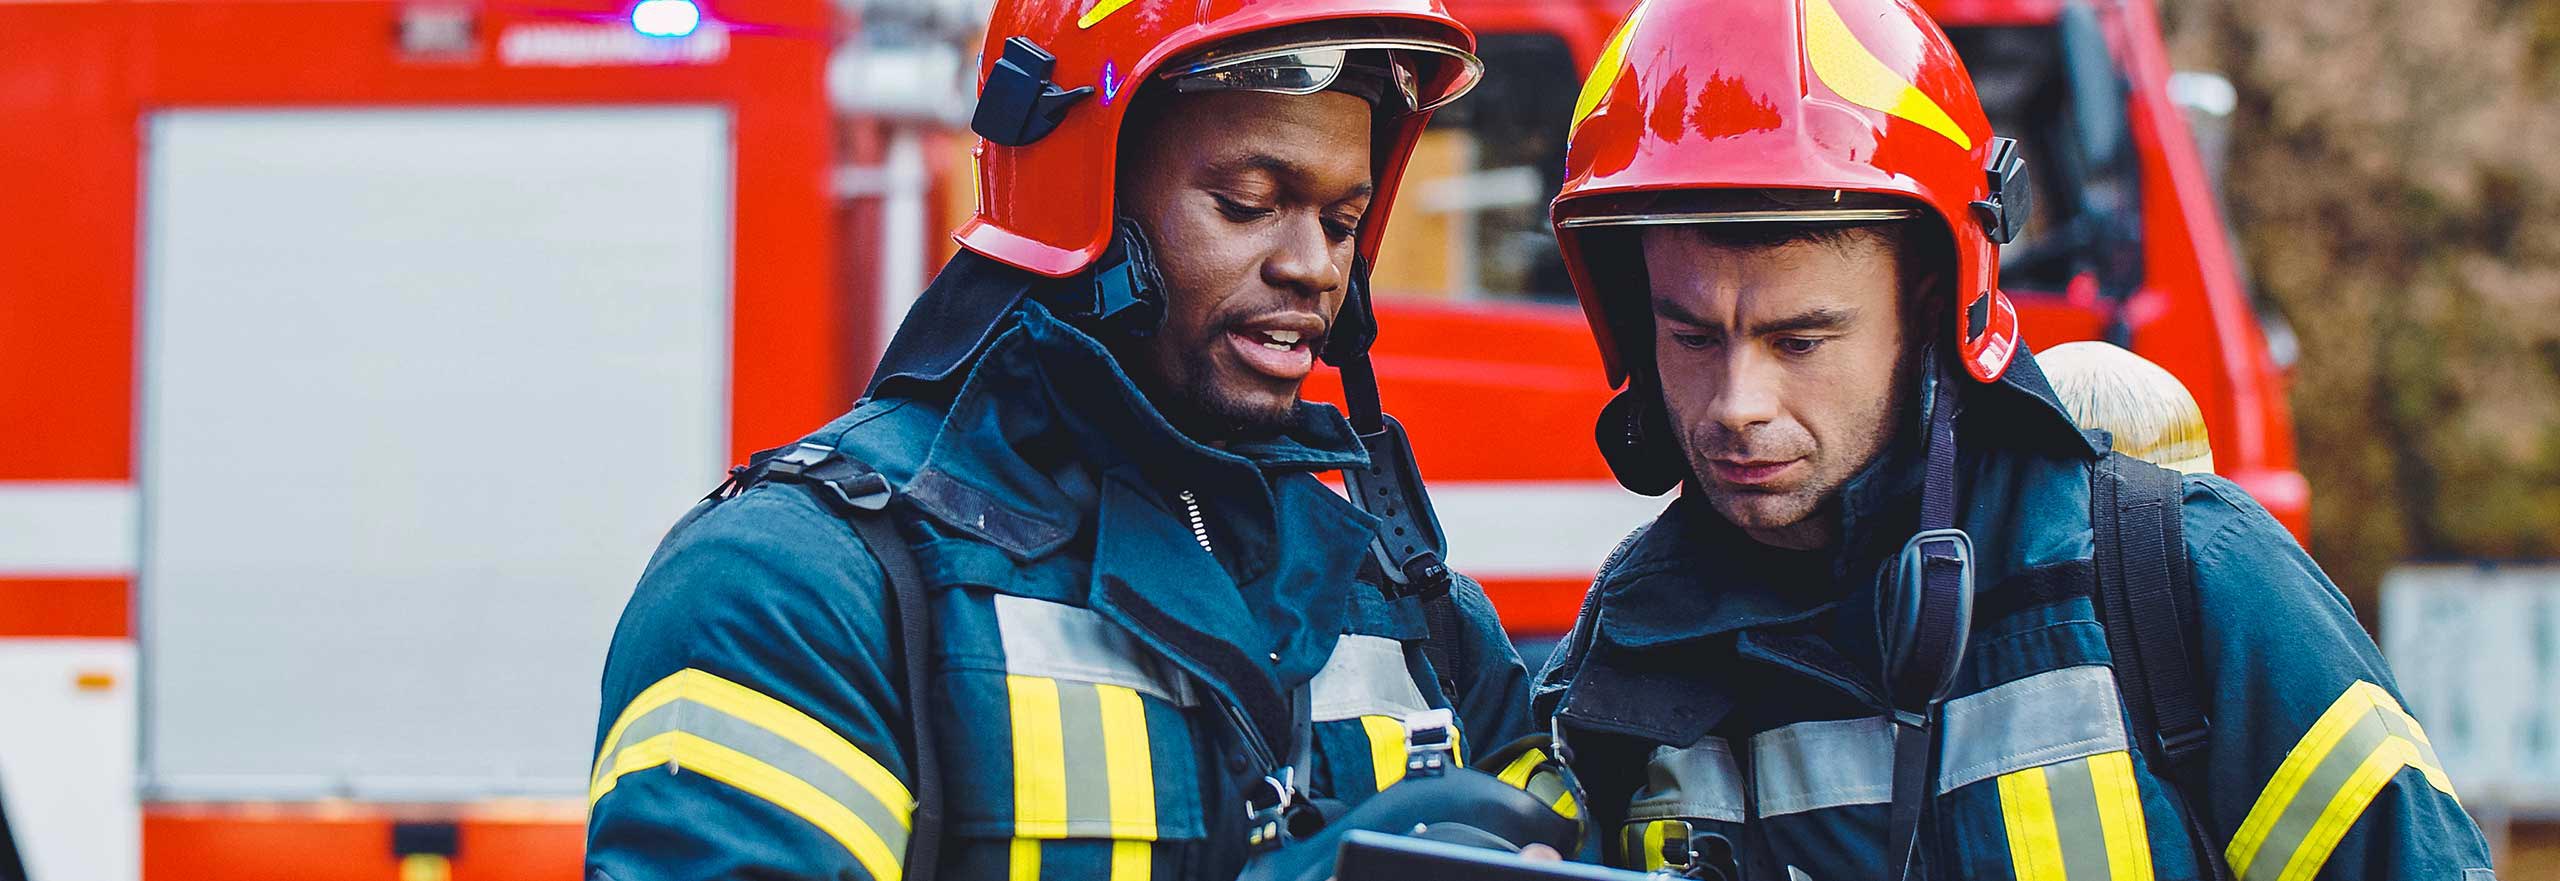 Immagine di due vigili del fuoco in operazioni di spegnimento, vigile del fuoco in azione che indossa i dispositivi di protezione individuale con elmetto mentre utilizza un tablet.